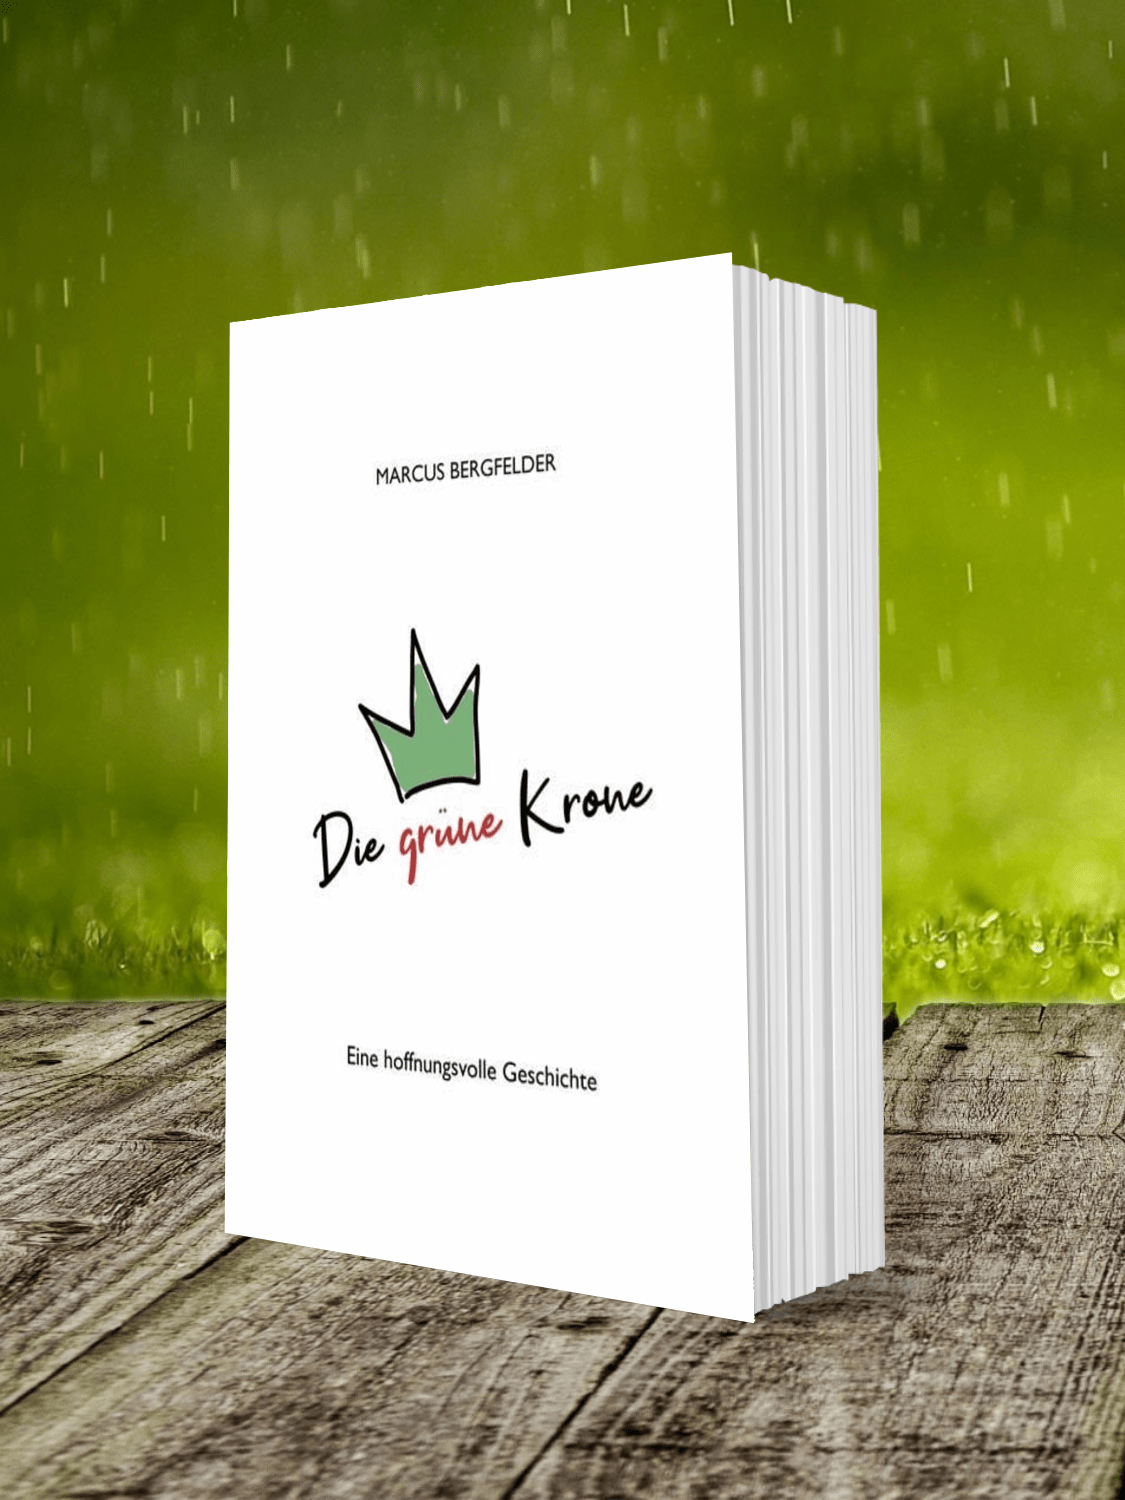 Coverbild des Buches "Die grüne Krone", Marcus Bergfelder, eine hoffnungsvolle Geschichte